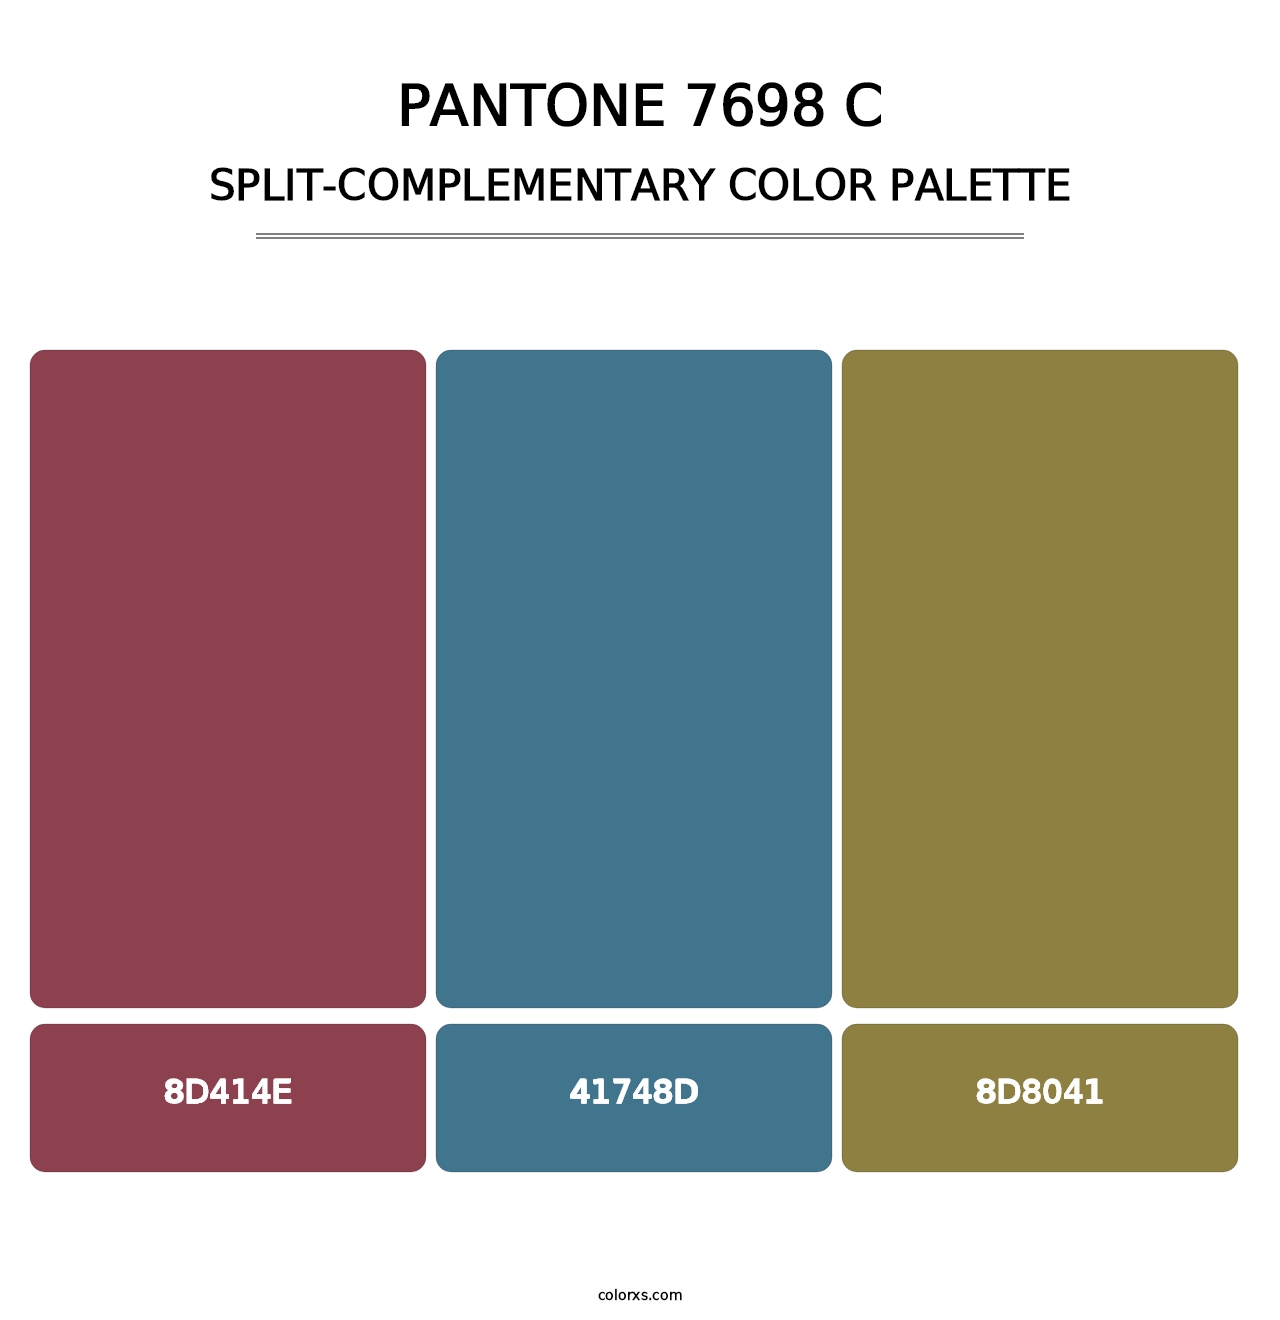 PANTONE 7698 C - Split-Complementary Color Palette